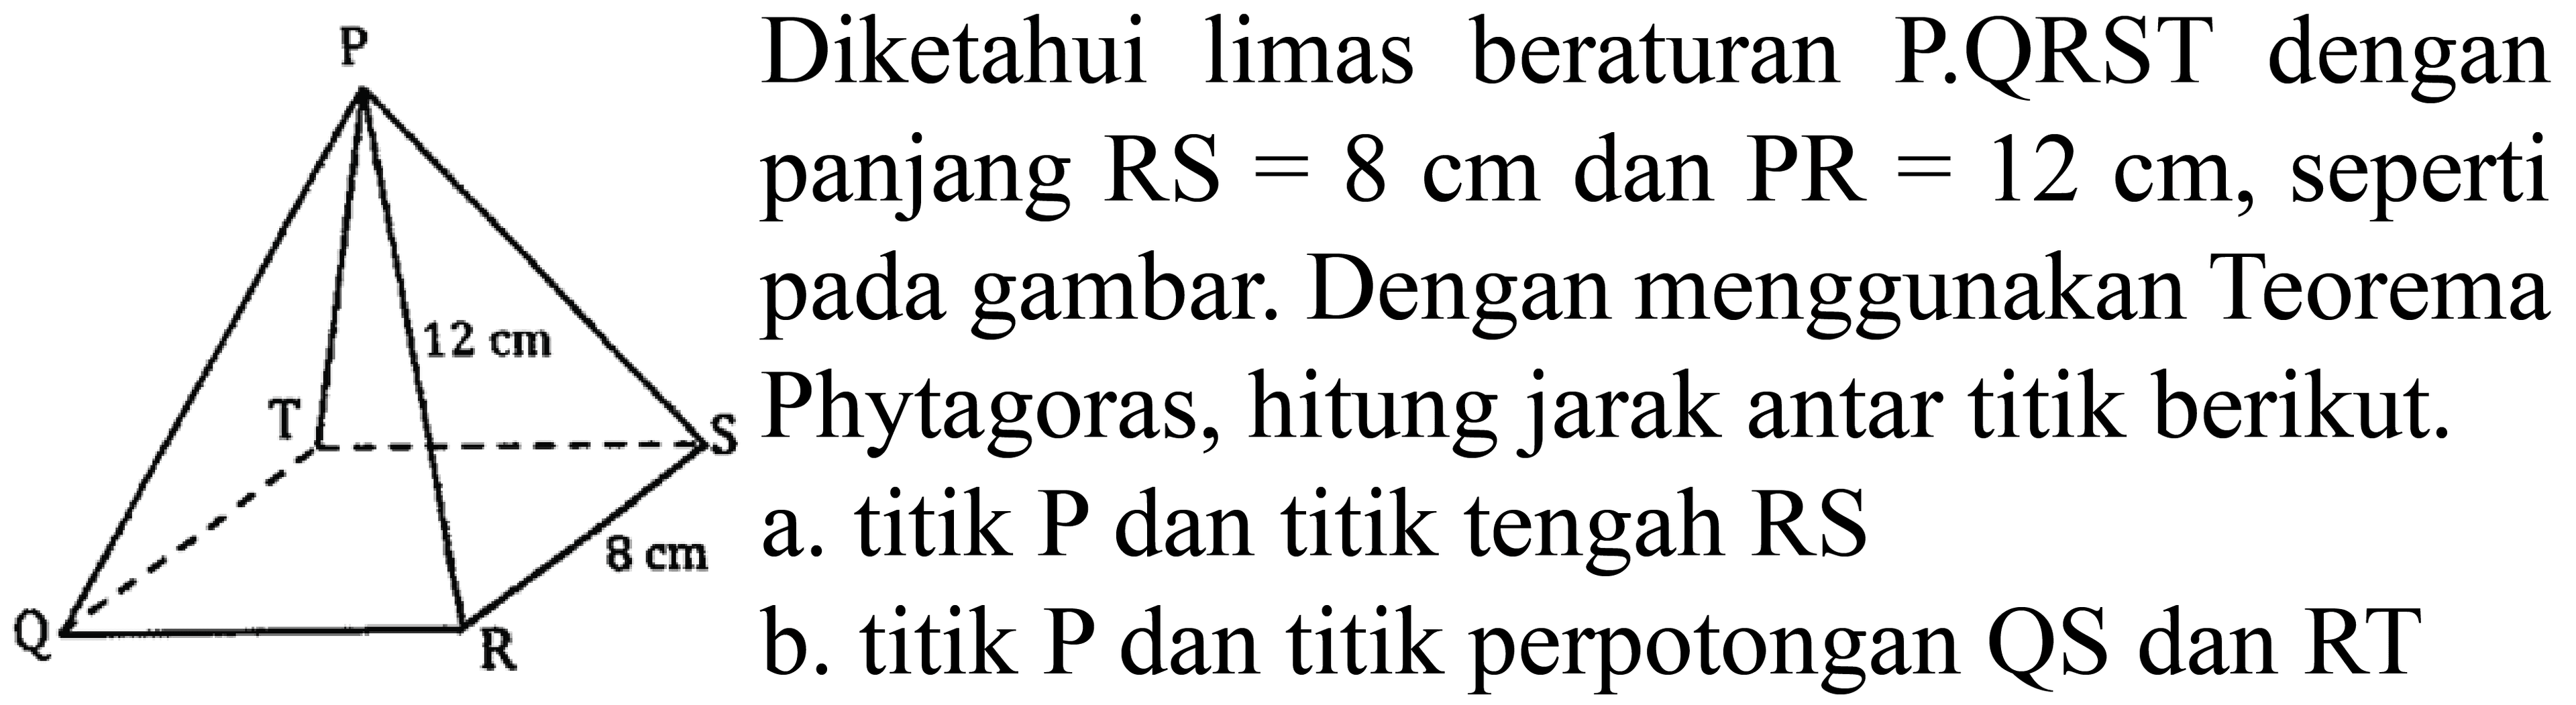 P 12 cm T S 8 cm Q R 
Diketahui limas beraturan P.QRST dengan panjang RS=8 cm dan PR=12 cm, seperti pada gambar. Dengan menggunakan Teorema Phytagoras, hitung jarak antar titik berikut. a. titik P dan titik tengah RS b. titik P dan titik perpotongan QS dan RT 